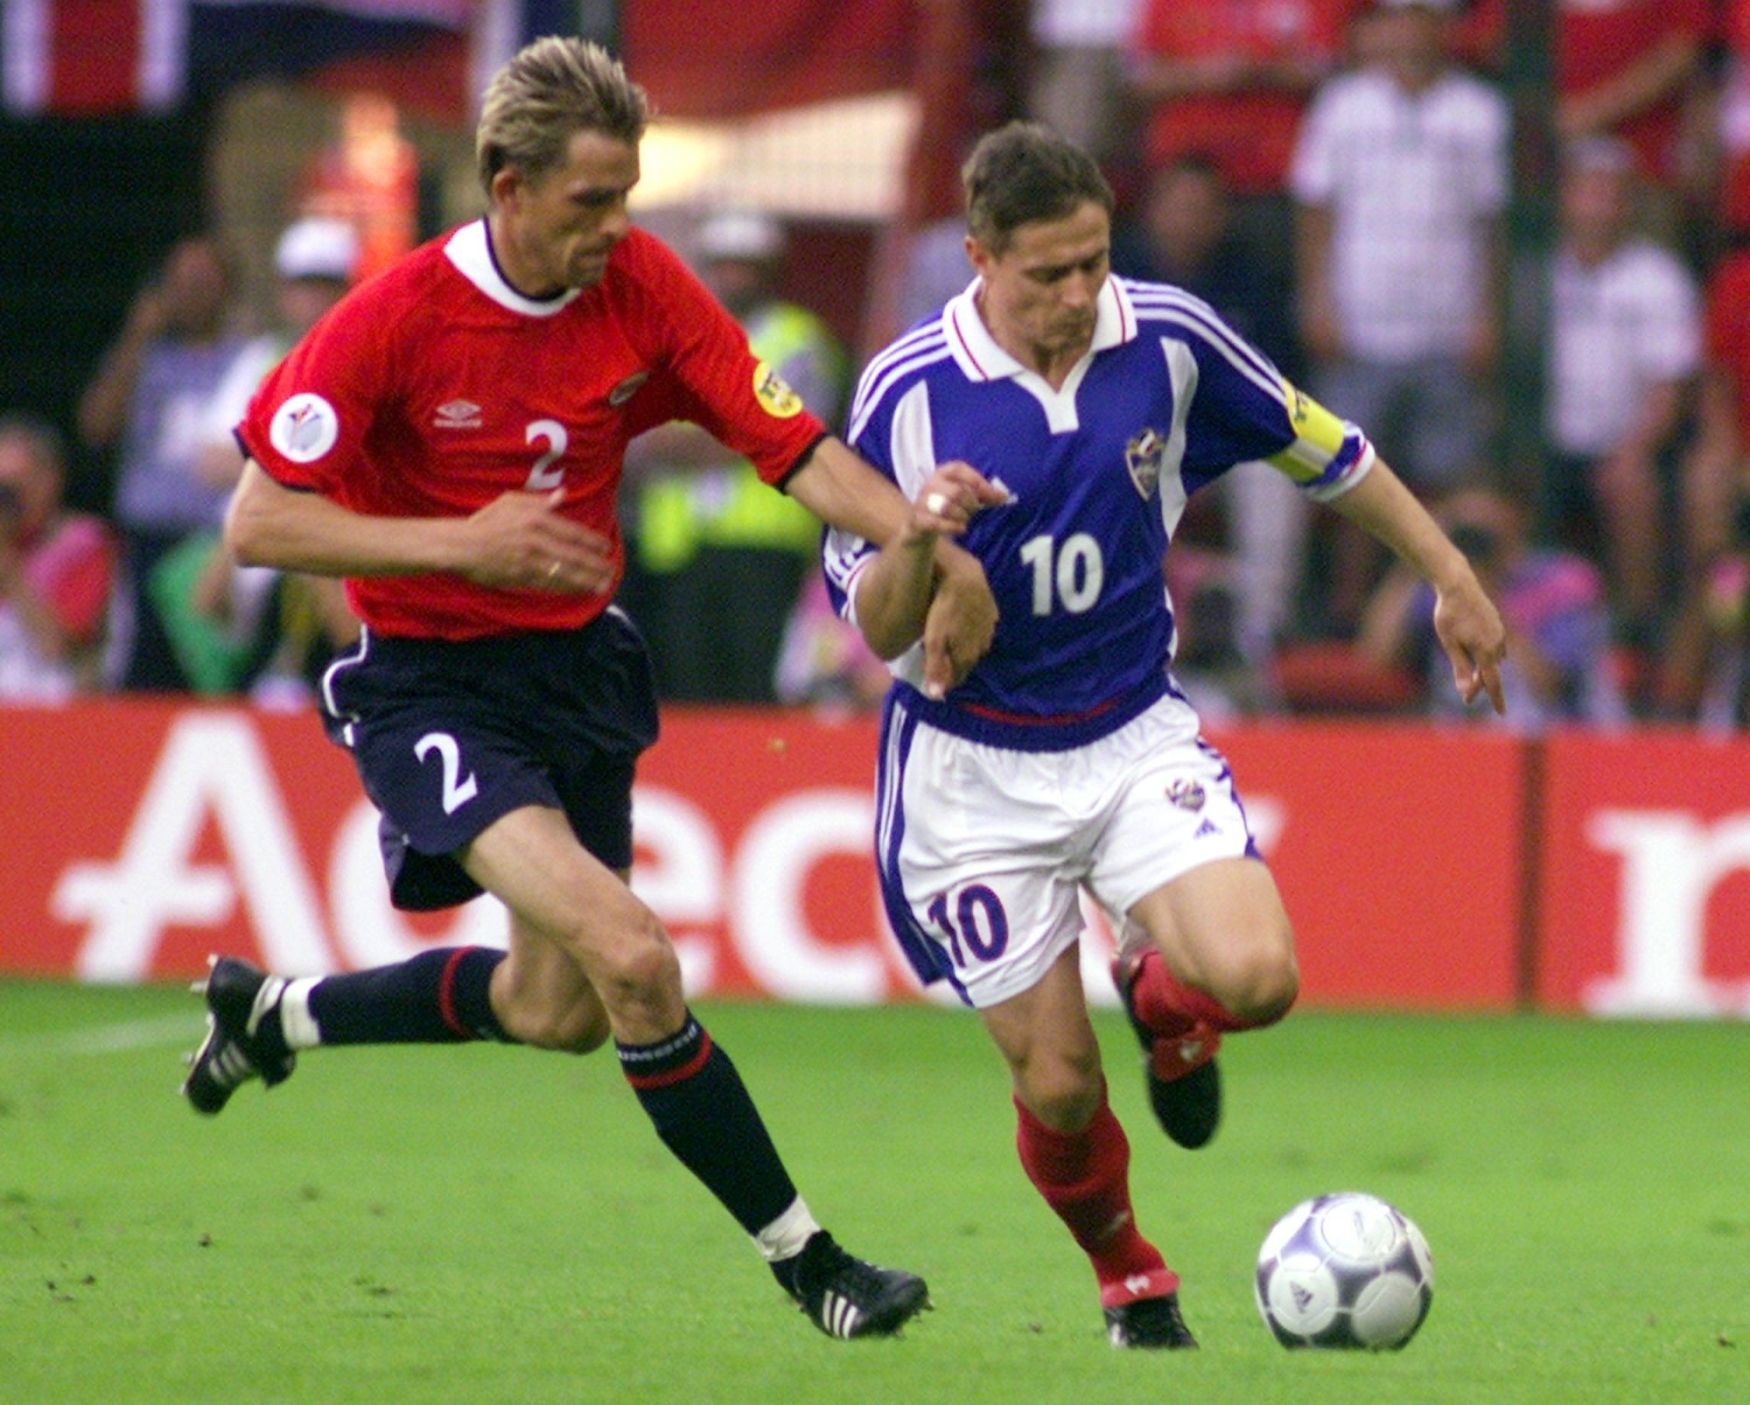 Andre Bergdolmo (Norsko) a Dragan Stojkovič (Jugoslávie) na Euru 2000